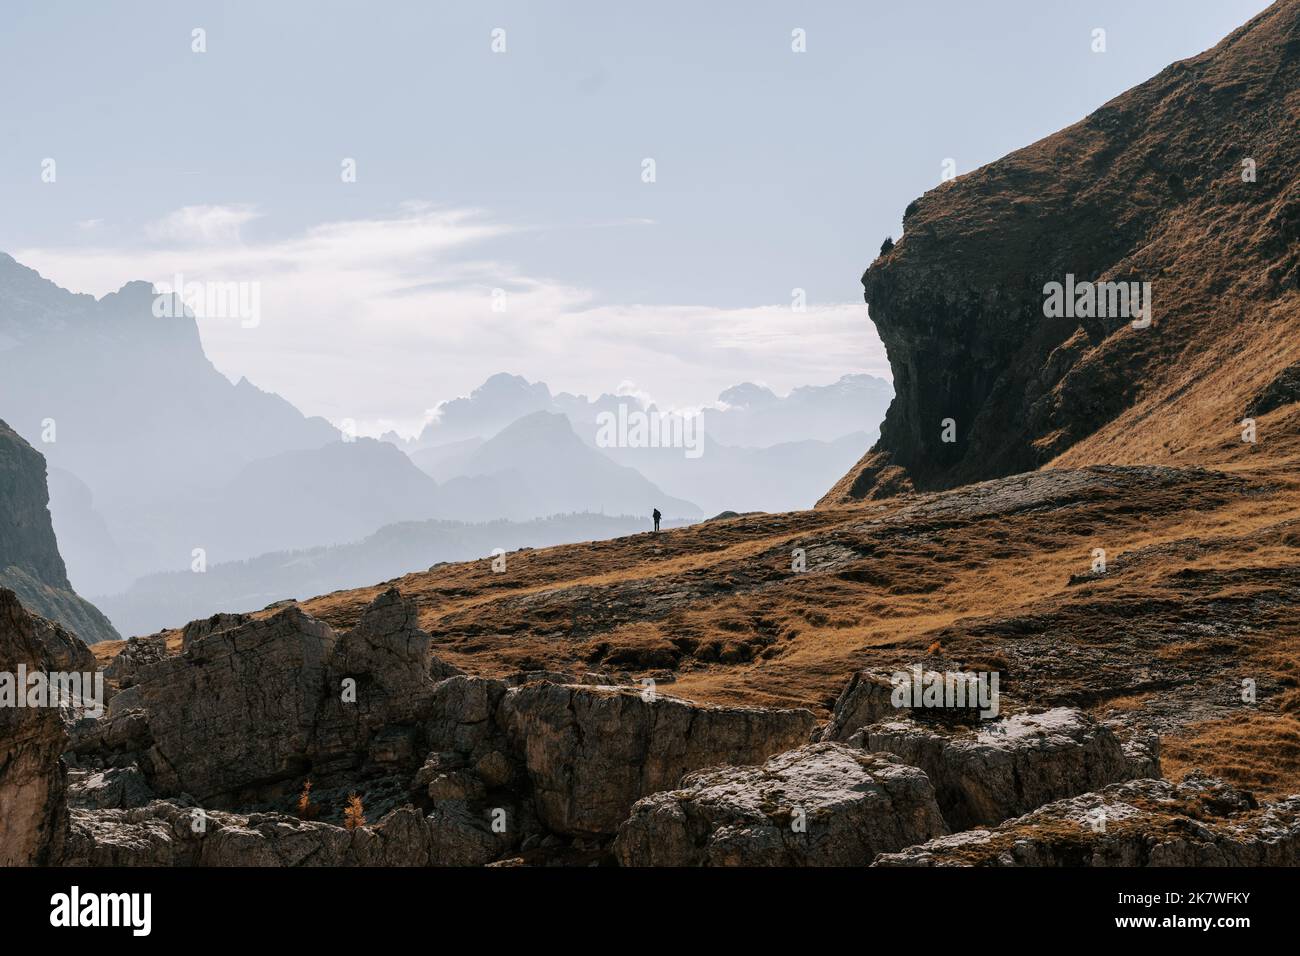 Die Belluner Dolomiten am Passo Giau. Wunderschöner Blick aus der Luft auf den Monte Pelmo im Herbst 1 Banque D'Images